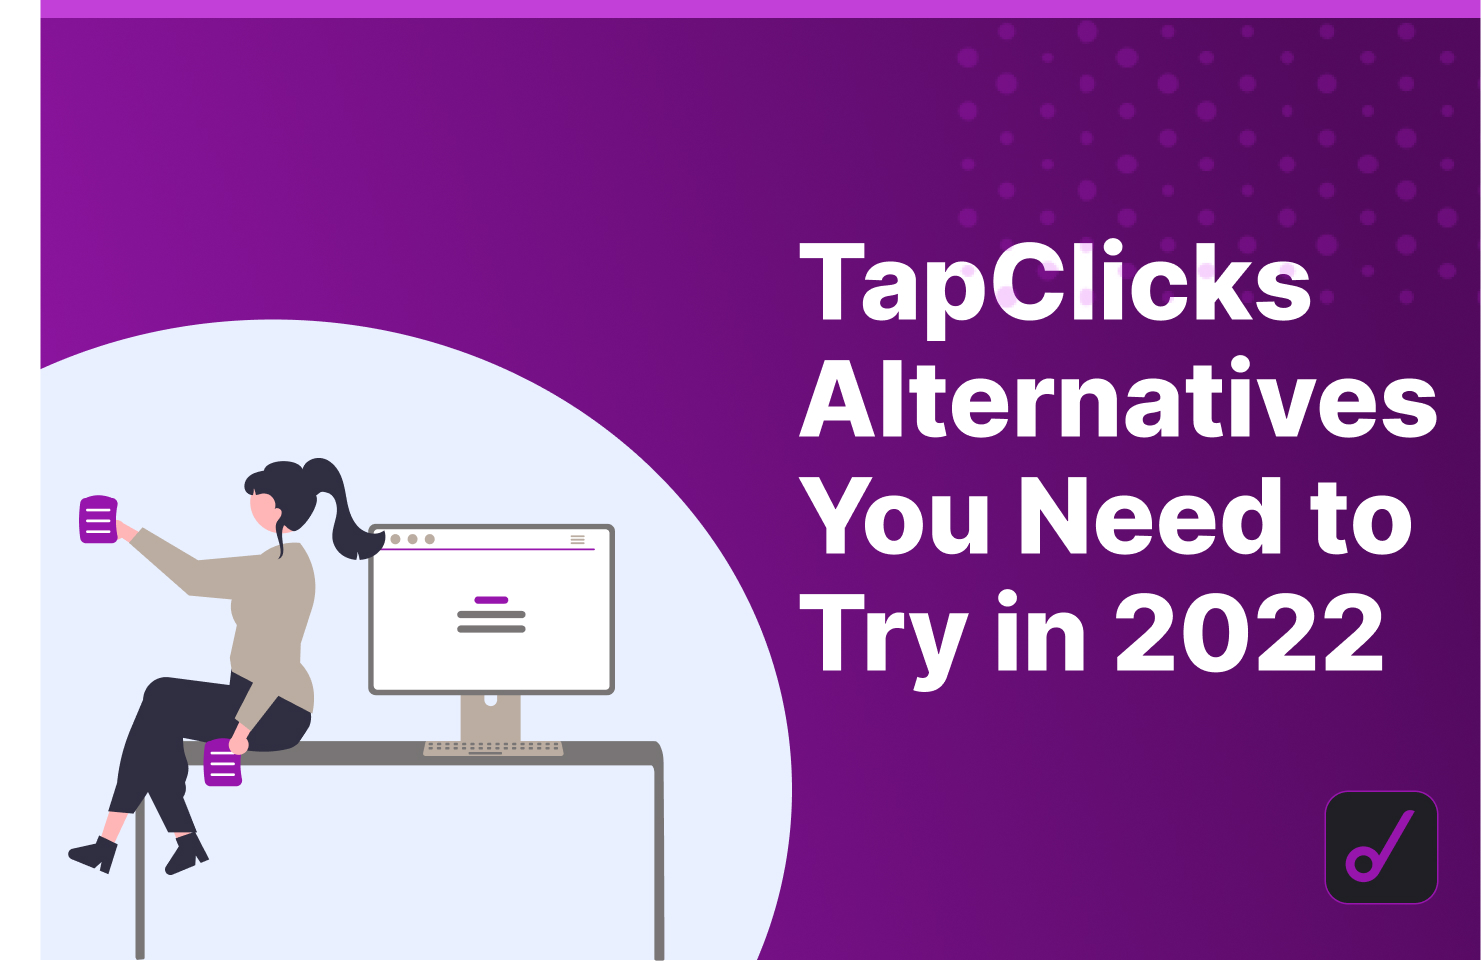 7 TapClicks Alternatives to Try in 2022